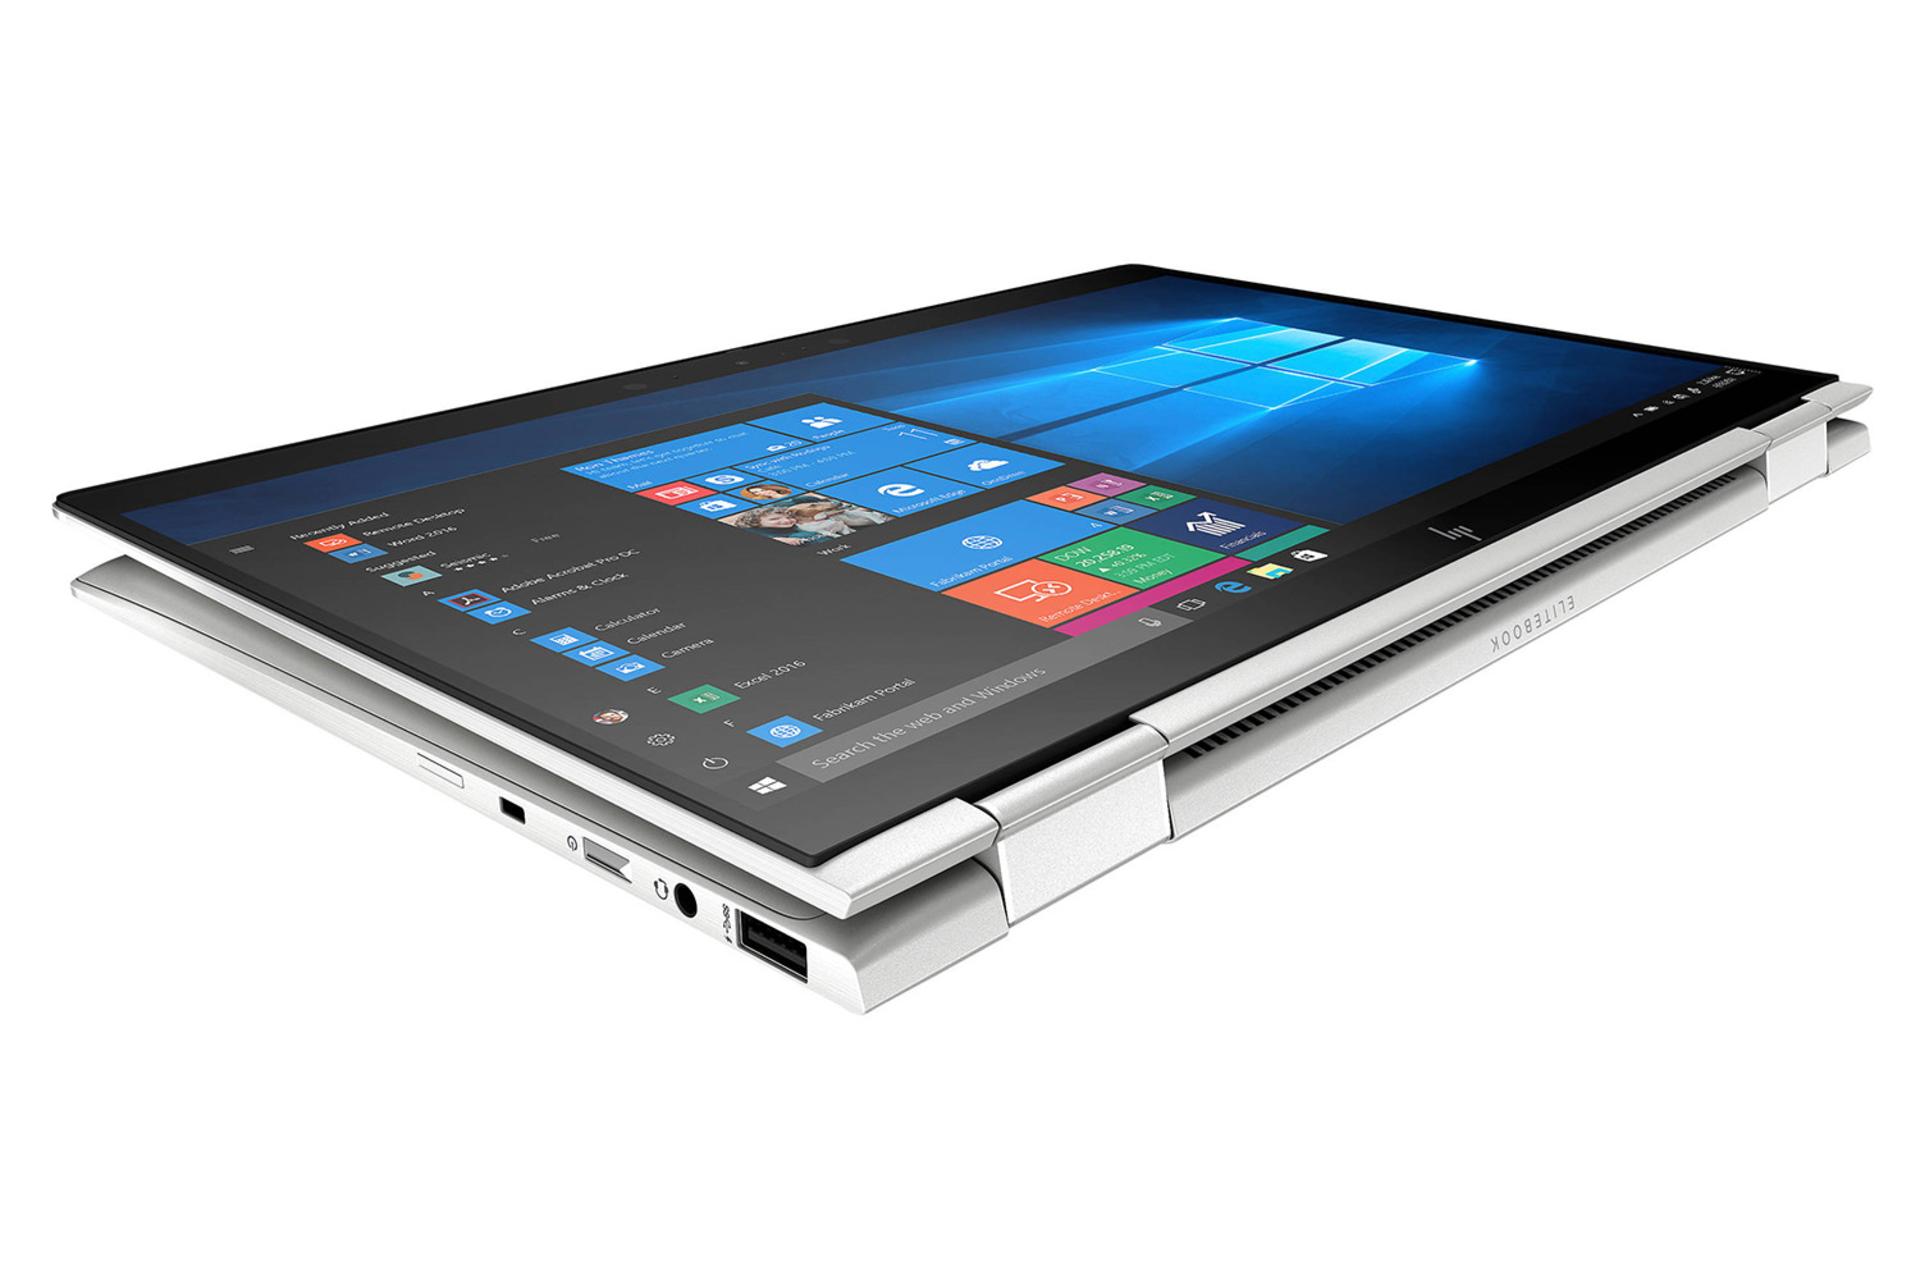 الیت بوک X360 1040 G5 اچ پی- نمای بغل صفحه نمایش و پورت ها / HP EliteBook X360 1040 G5